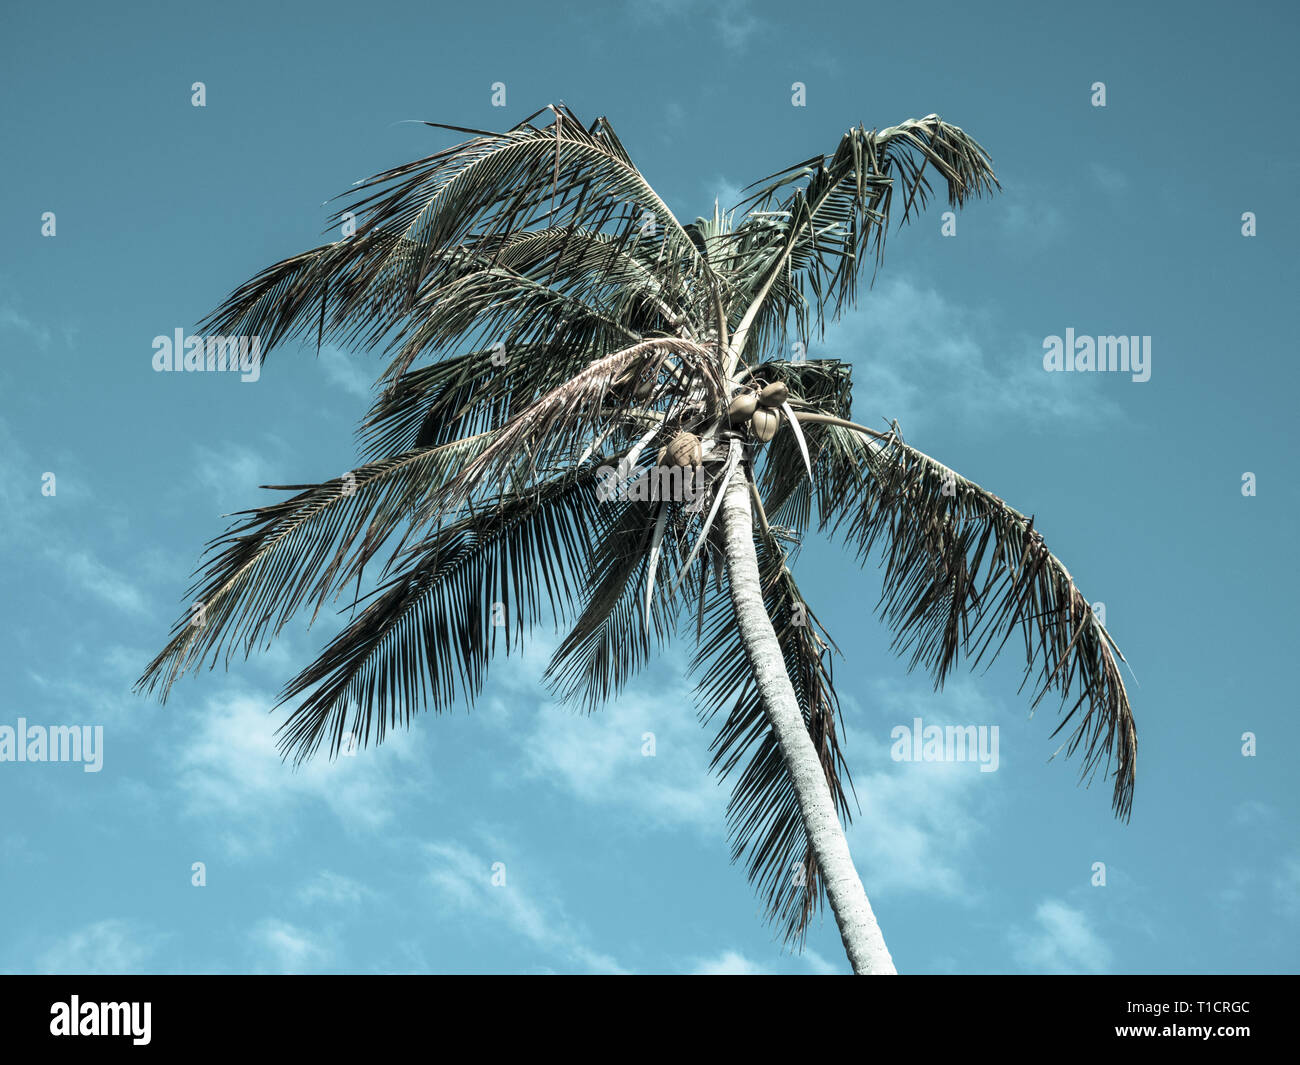 Fotografía de paisajes espectaculares de hermosas palmeras, Islas Bahamas, Eleuthera, las Bahamas, El Caribe. Foto de stock